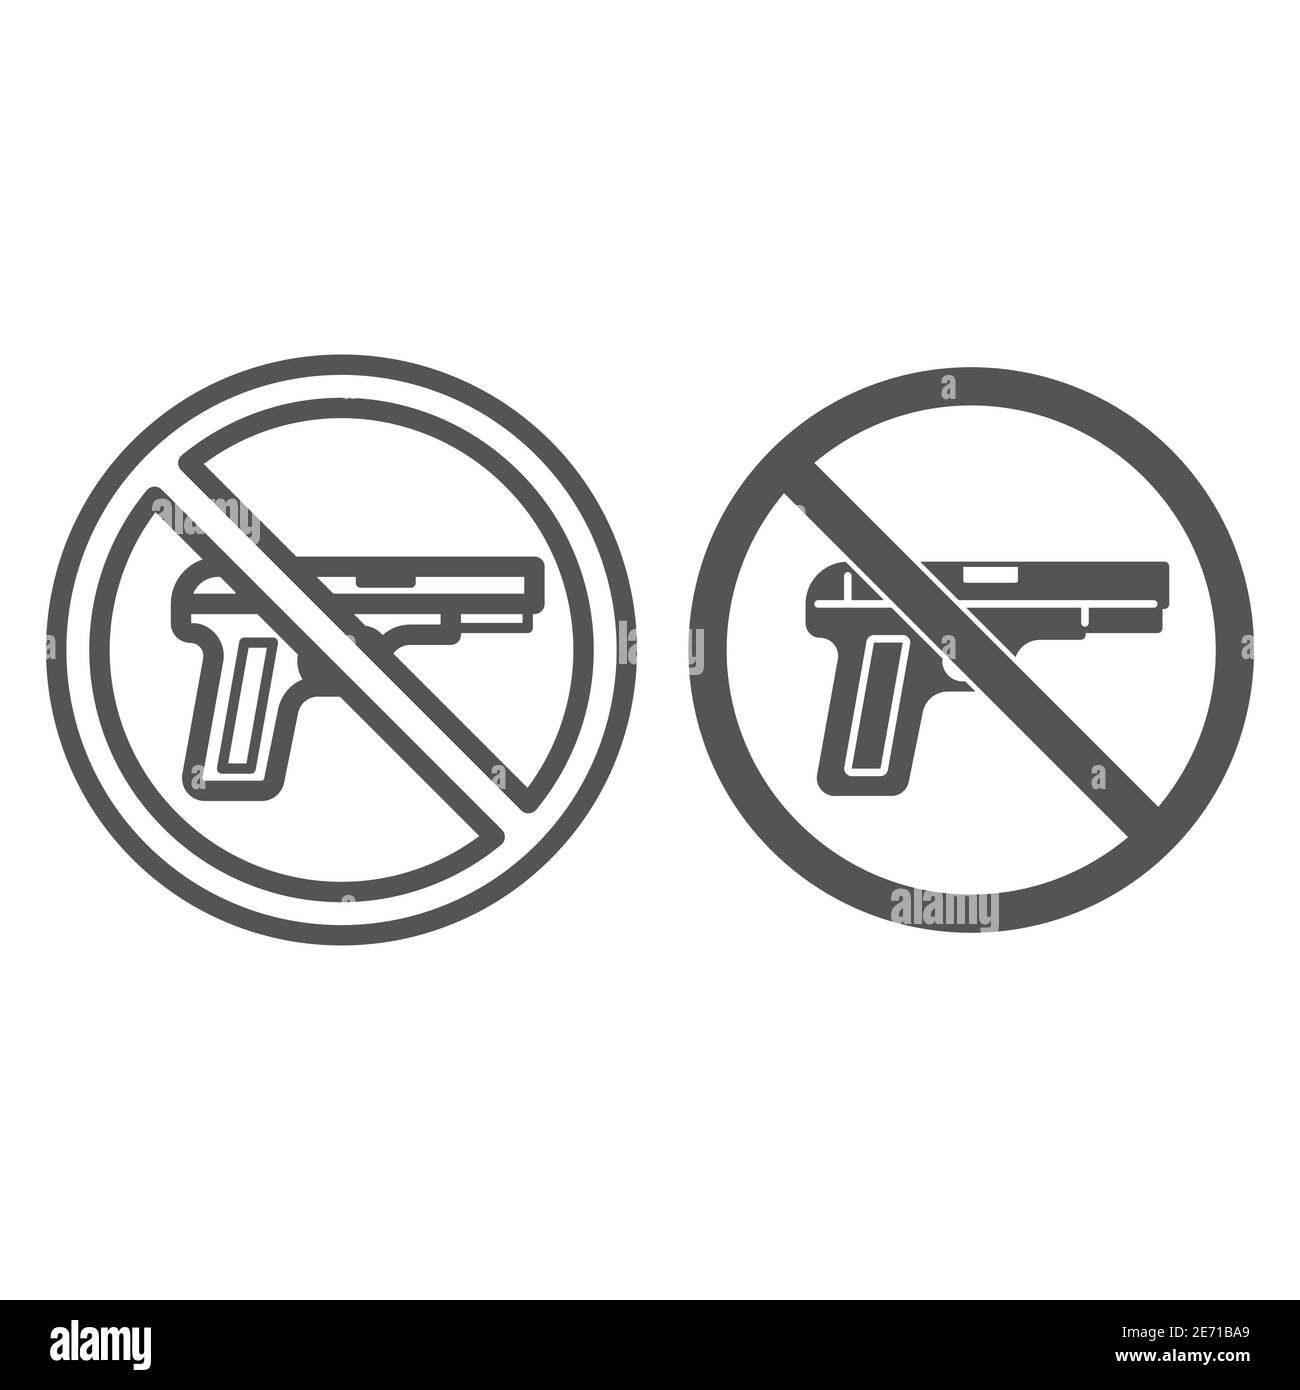 Aucune ligne d'armes à feu et icône solide, concept de la matière de la vie noire, aucun signe d'avertissement d'armes à feu ou d'armes sur fond blanc, cercle aucun signe interdit d'armes à feu dans Illustration de Vecteur